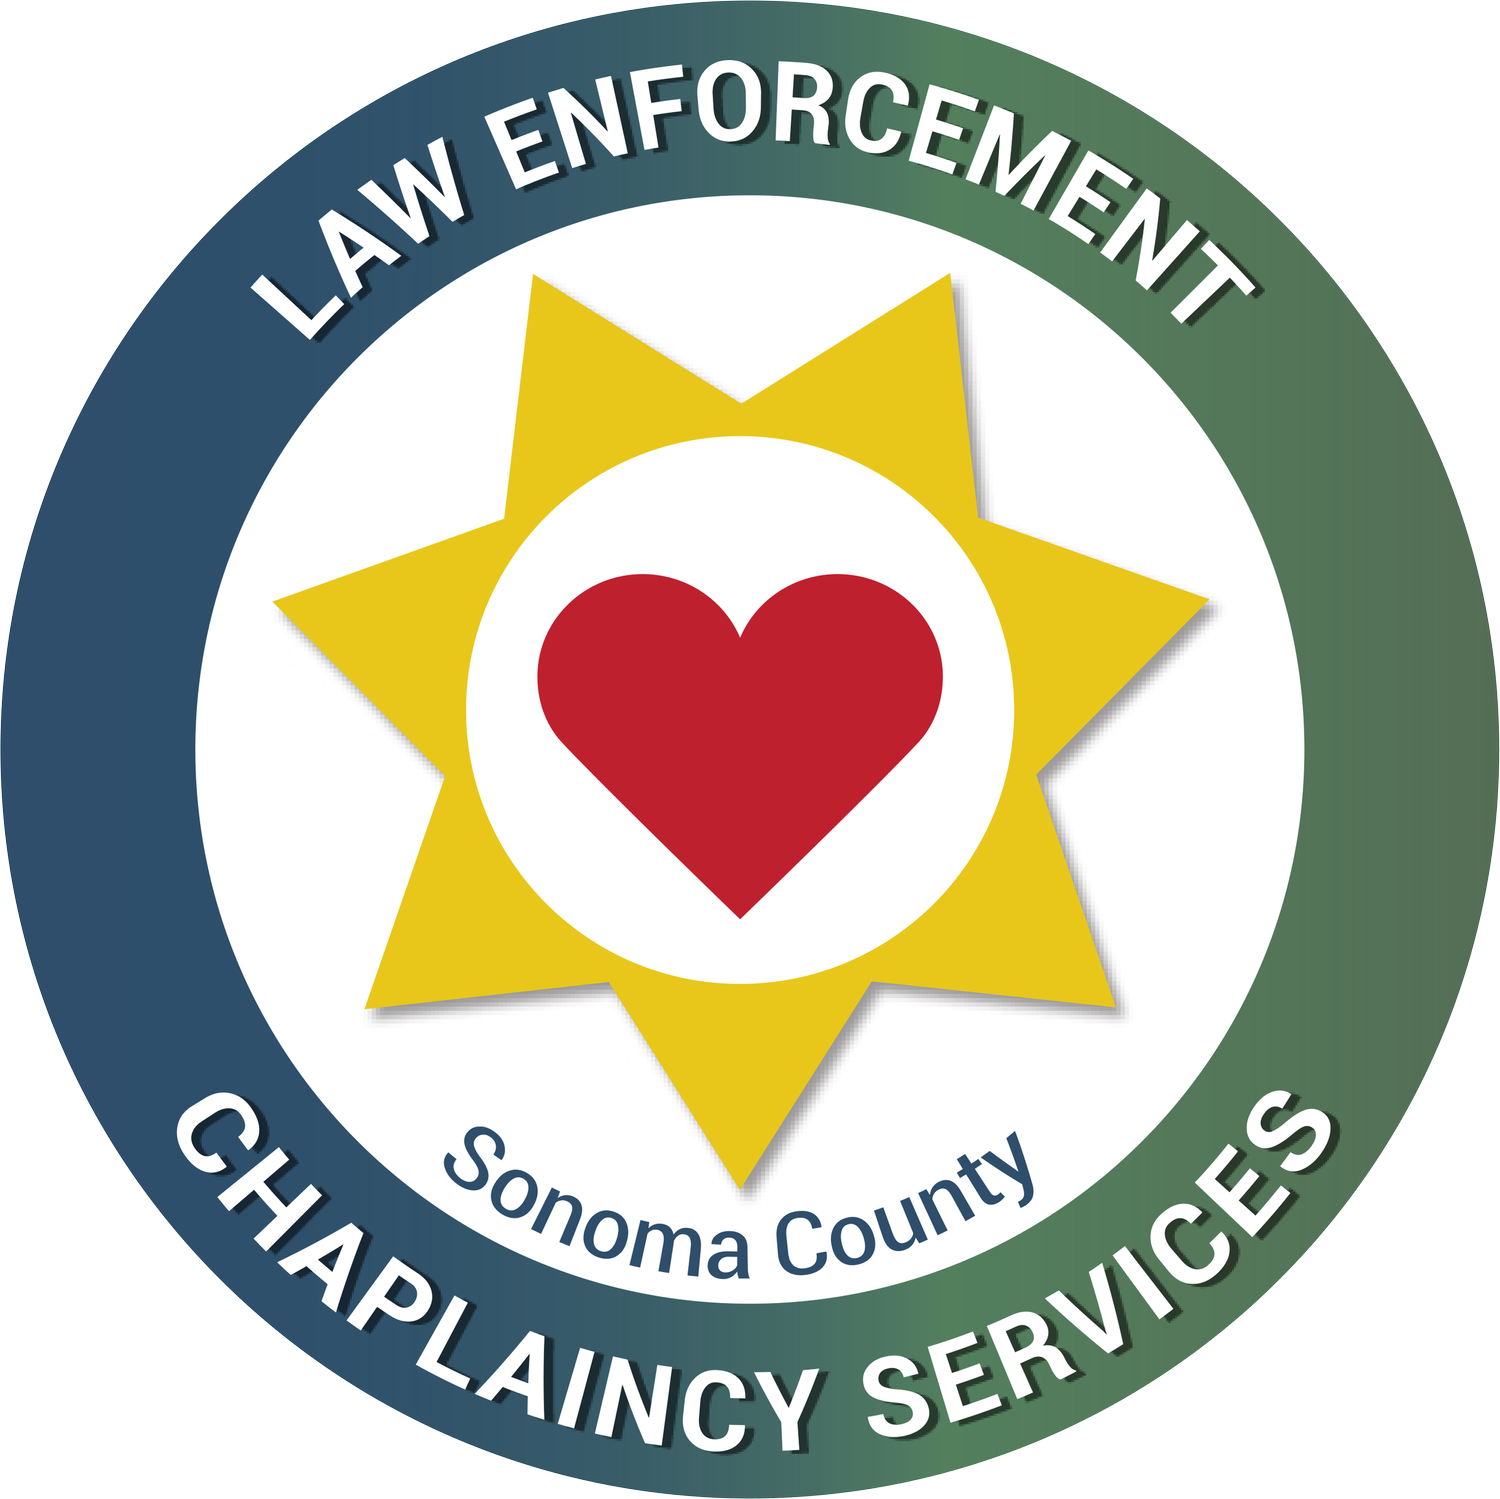 Sonoma County Law Enforcement chaplaincy service